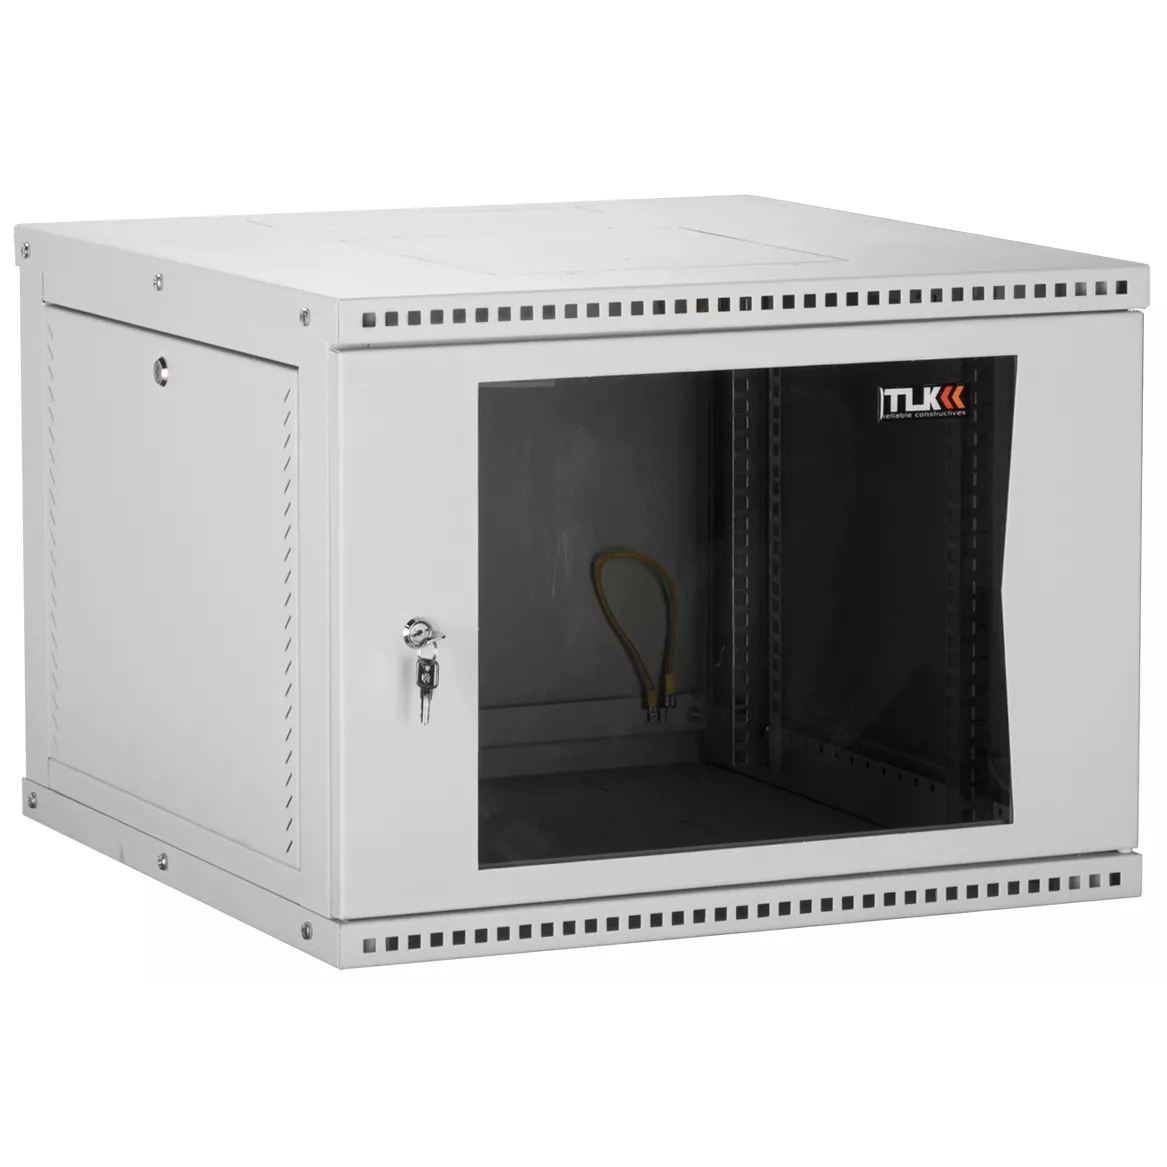 Настенный разборный шкаф TLK 19", 12U, стеклянная дверь, Ш600хВ569хГ600мм, 2 пары монтажных направляющих, серый